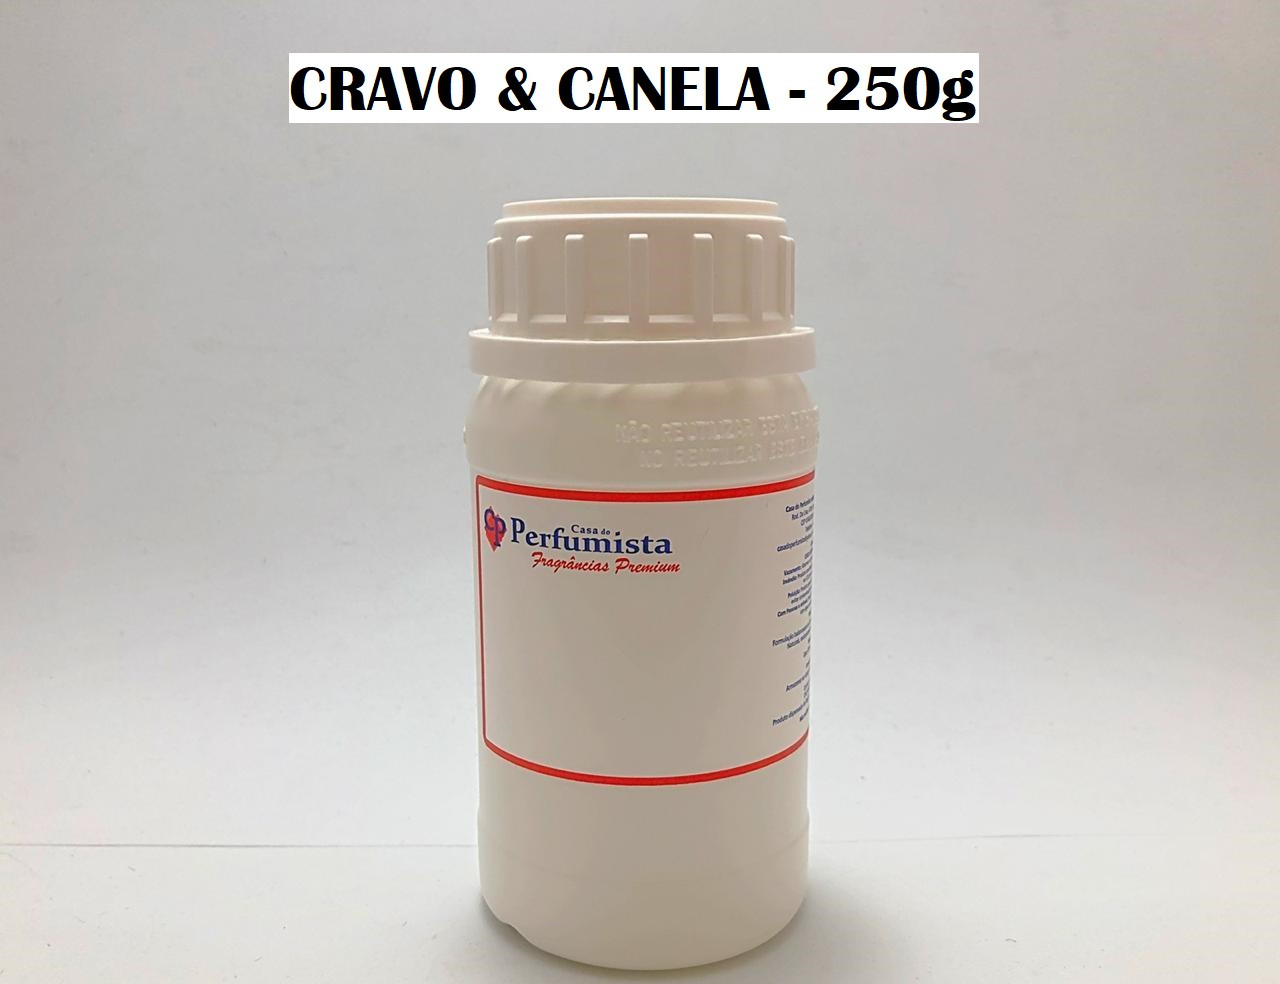 CRAVO E CANELA - 250g